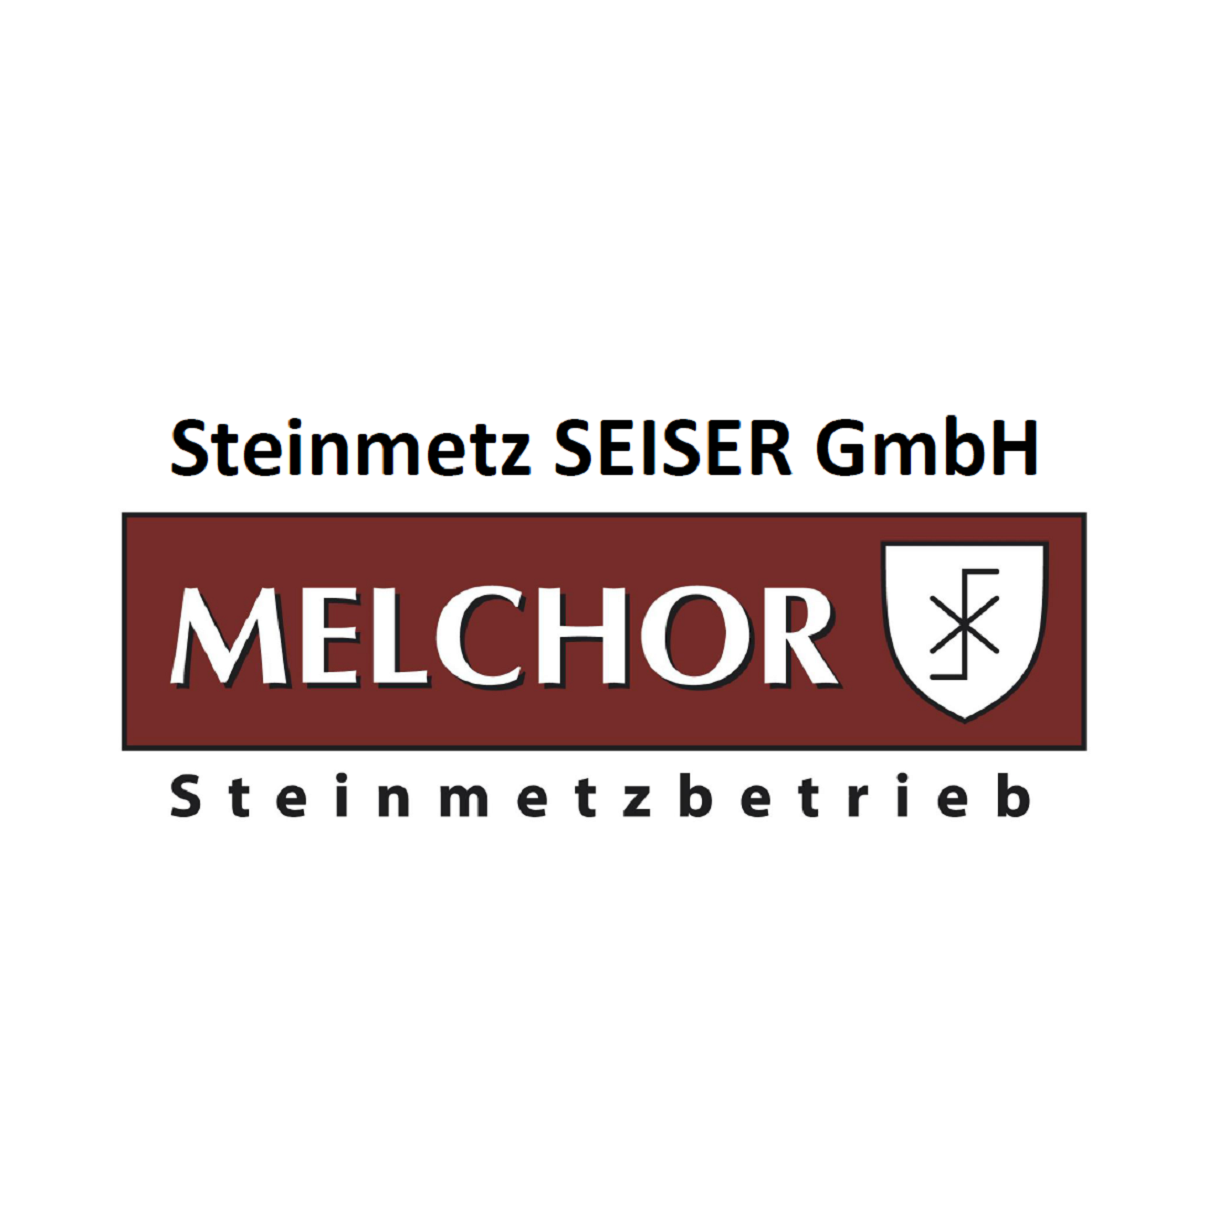 Steinmetz Seiser GmbH vormals Melchor - Logo